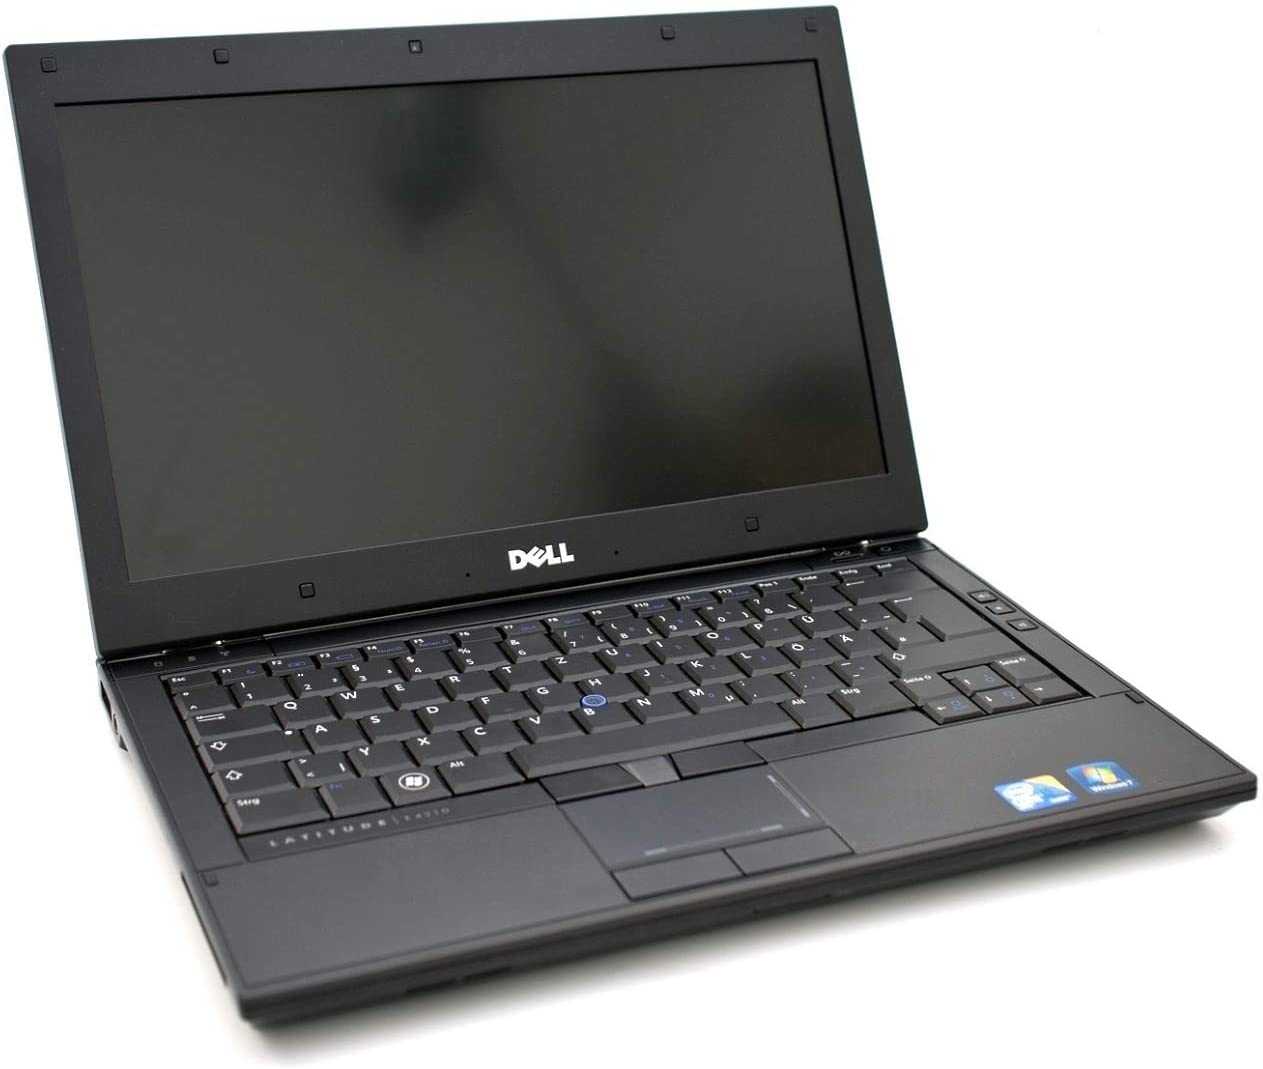 Dell Latitude E4310 Refurbished – Core i5 2.53GHz / 4GB RAM/320GB HDD